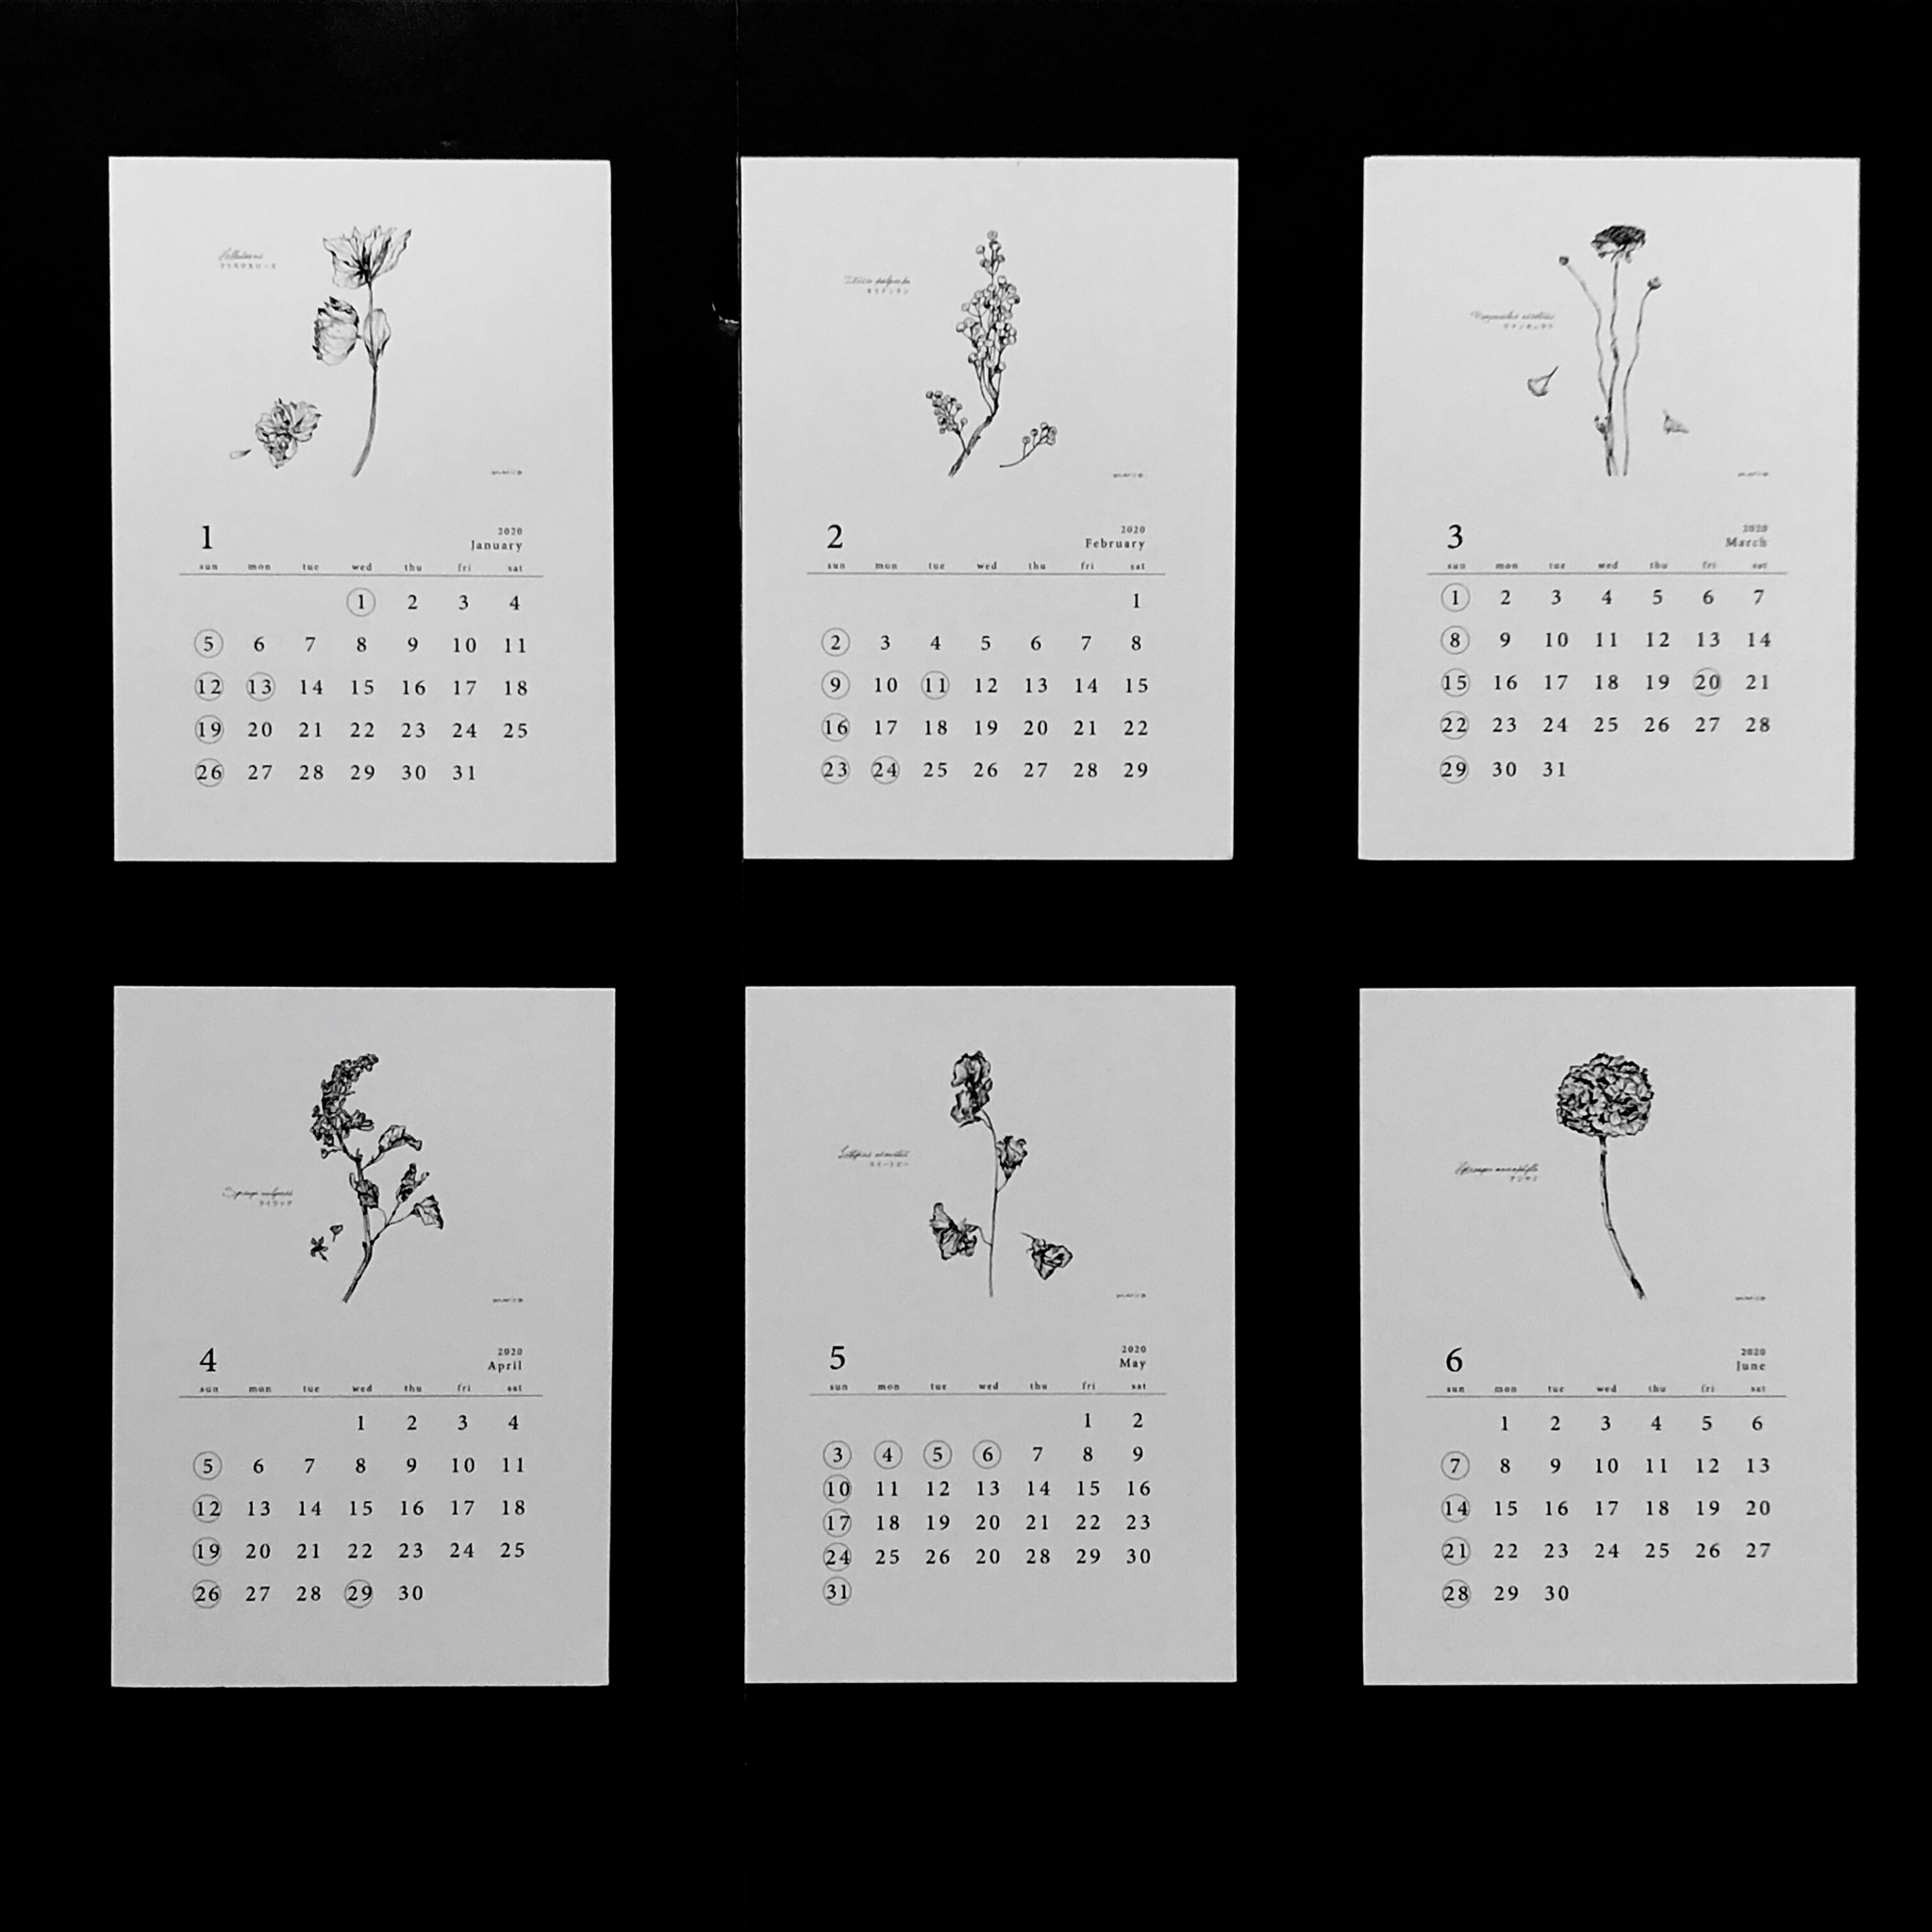 80 Off 植物語 しょくぶつがたり ポストカードカレンダー Iichi ハンドメイド クラフト作品 手仕事品の通販